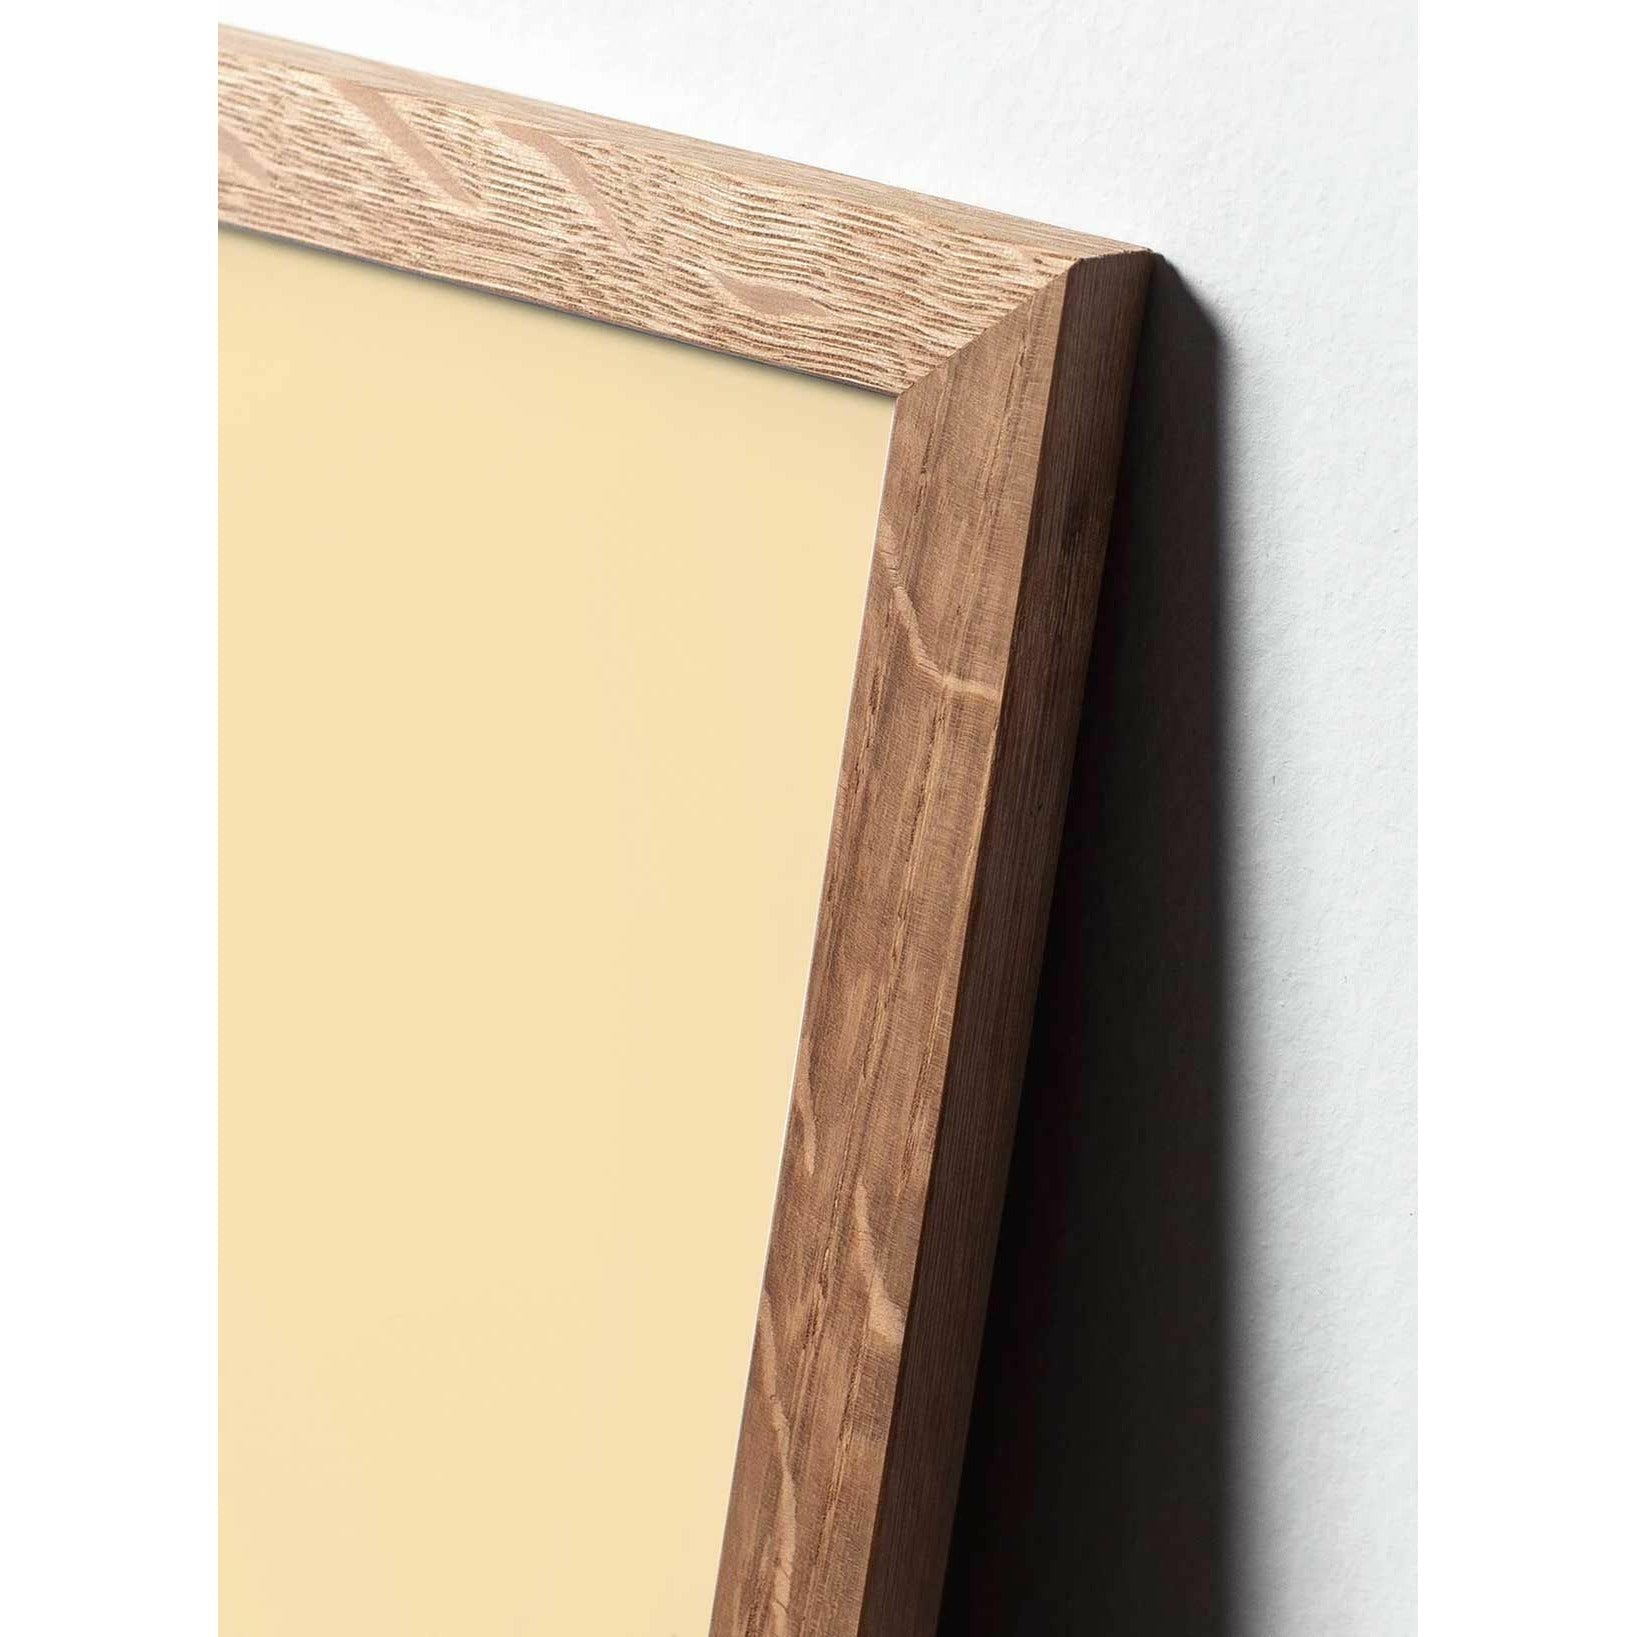 Plakát Pine Cone Line Pine Cone, rám vyrobený z lehkého dřeva 50x70 cm, bílé pozadí